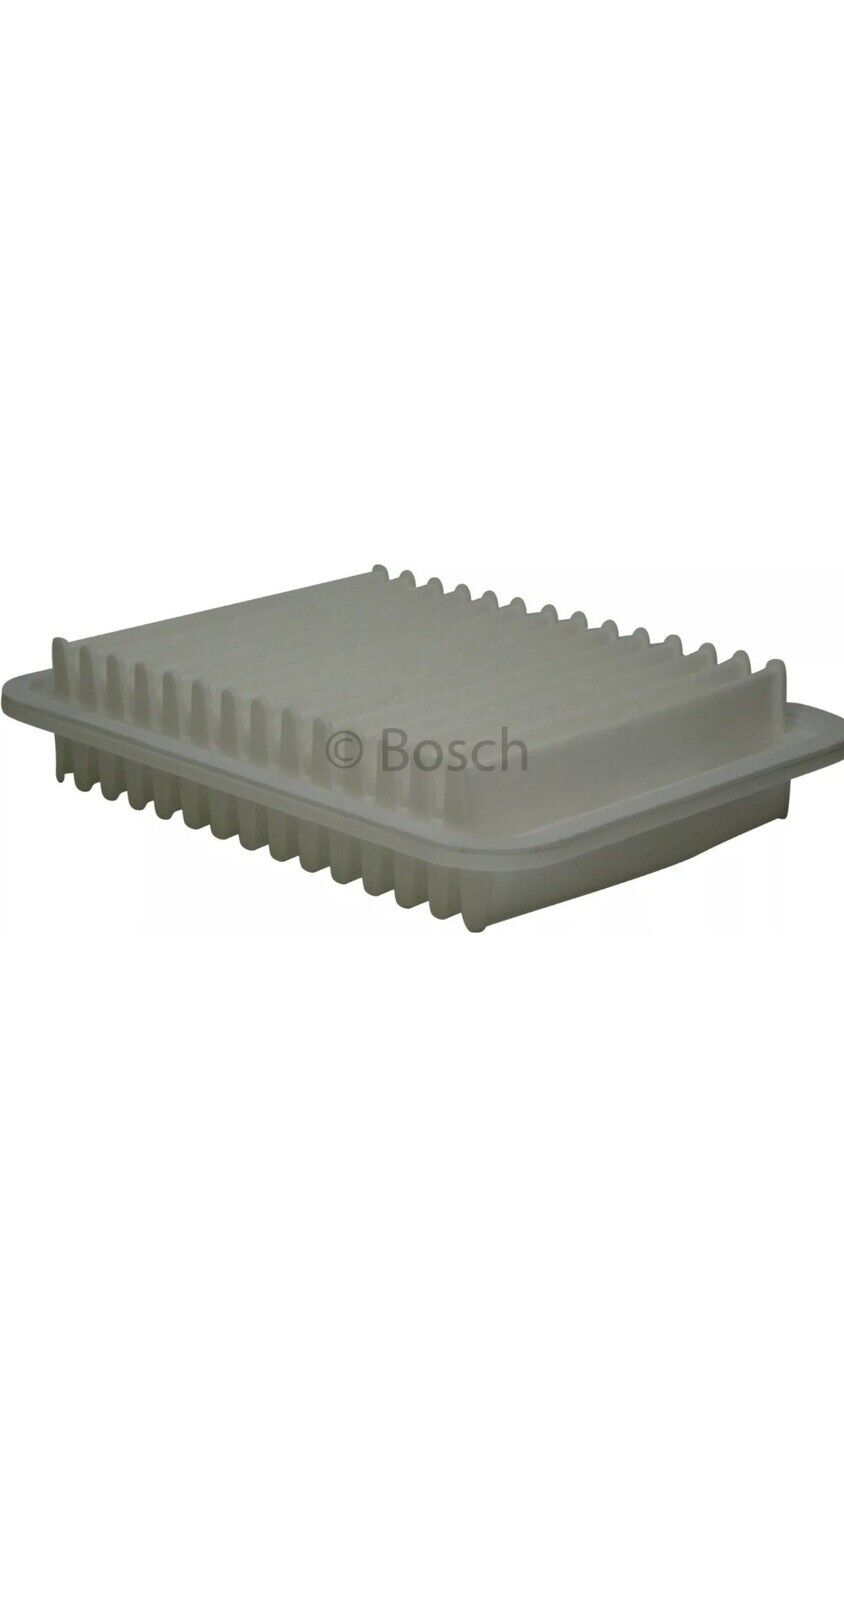 Air Filter Bosch For Corolla 2014-2017 Bosch 5169WS